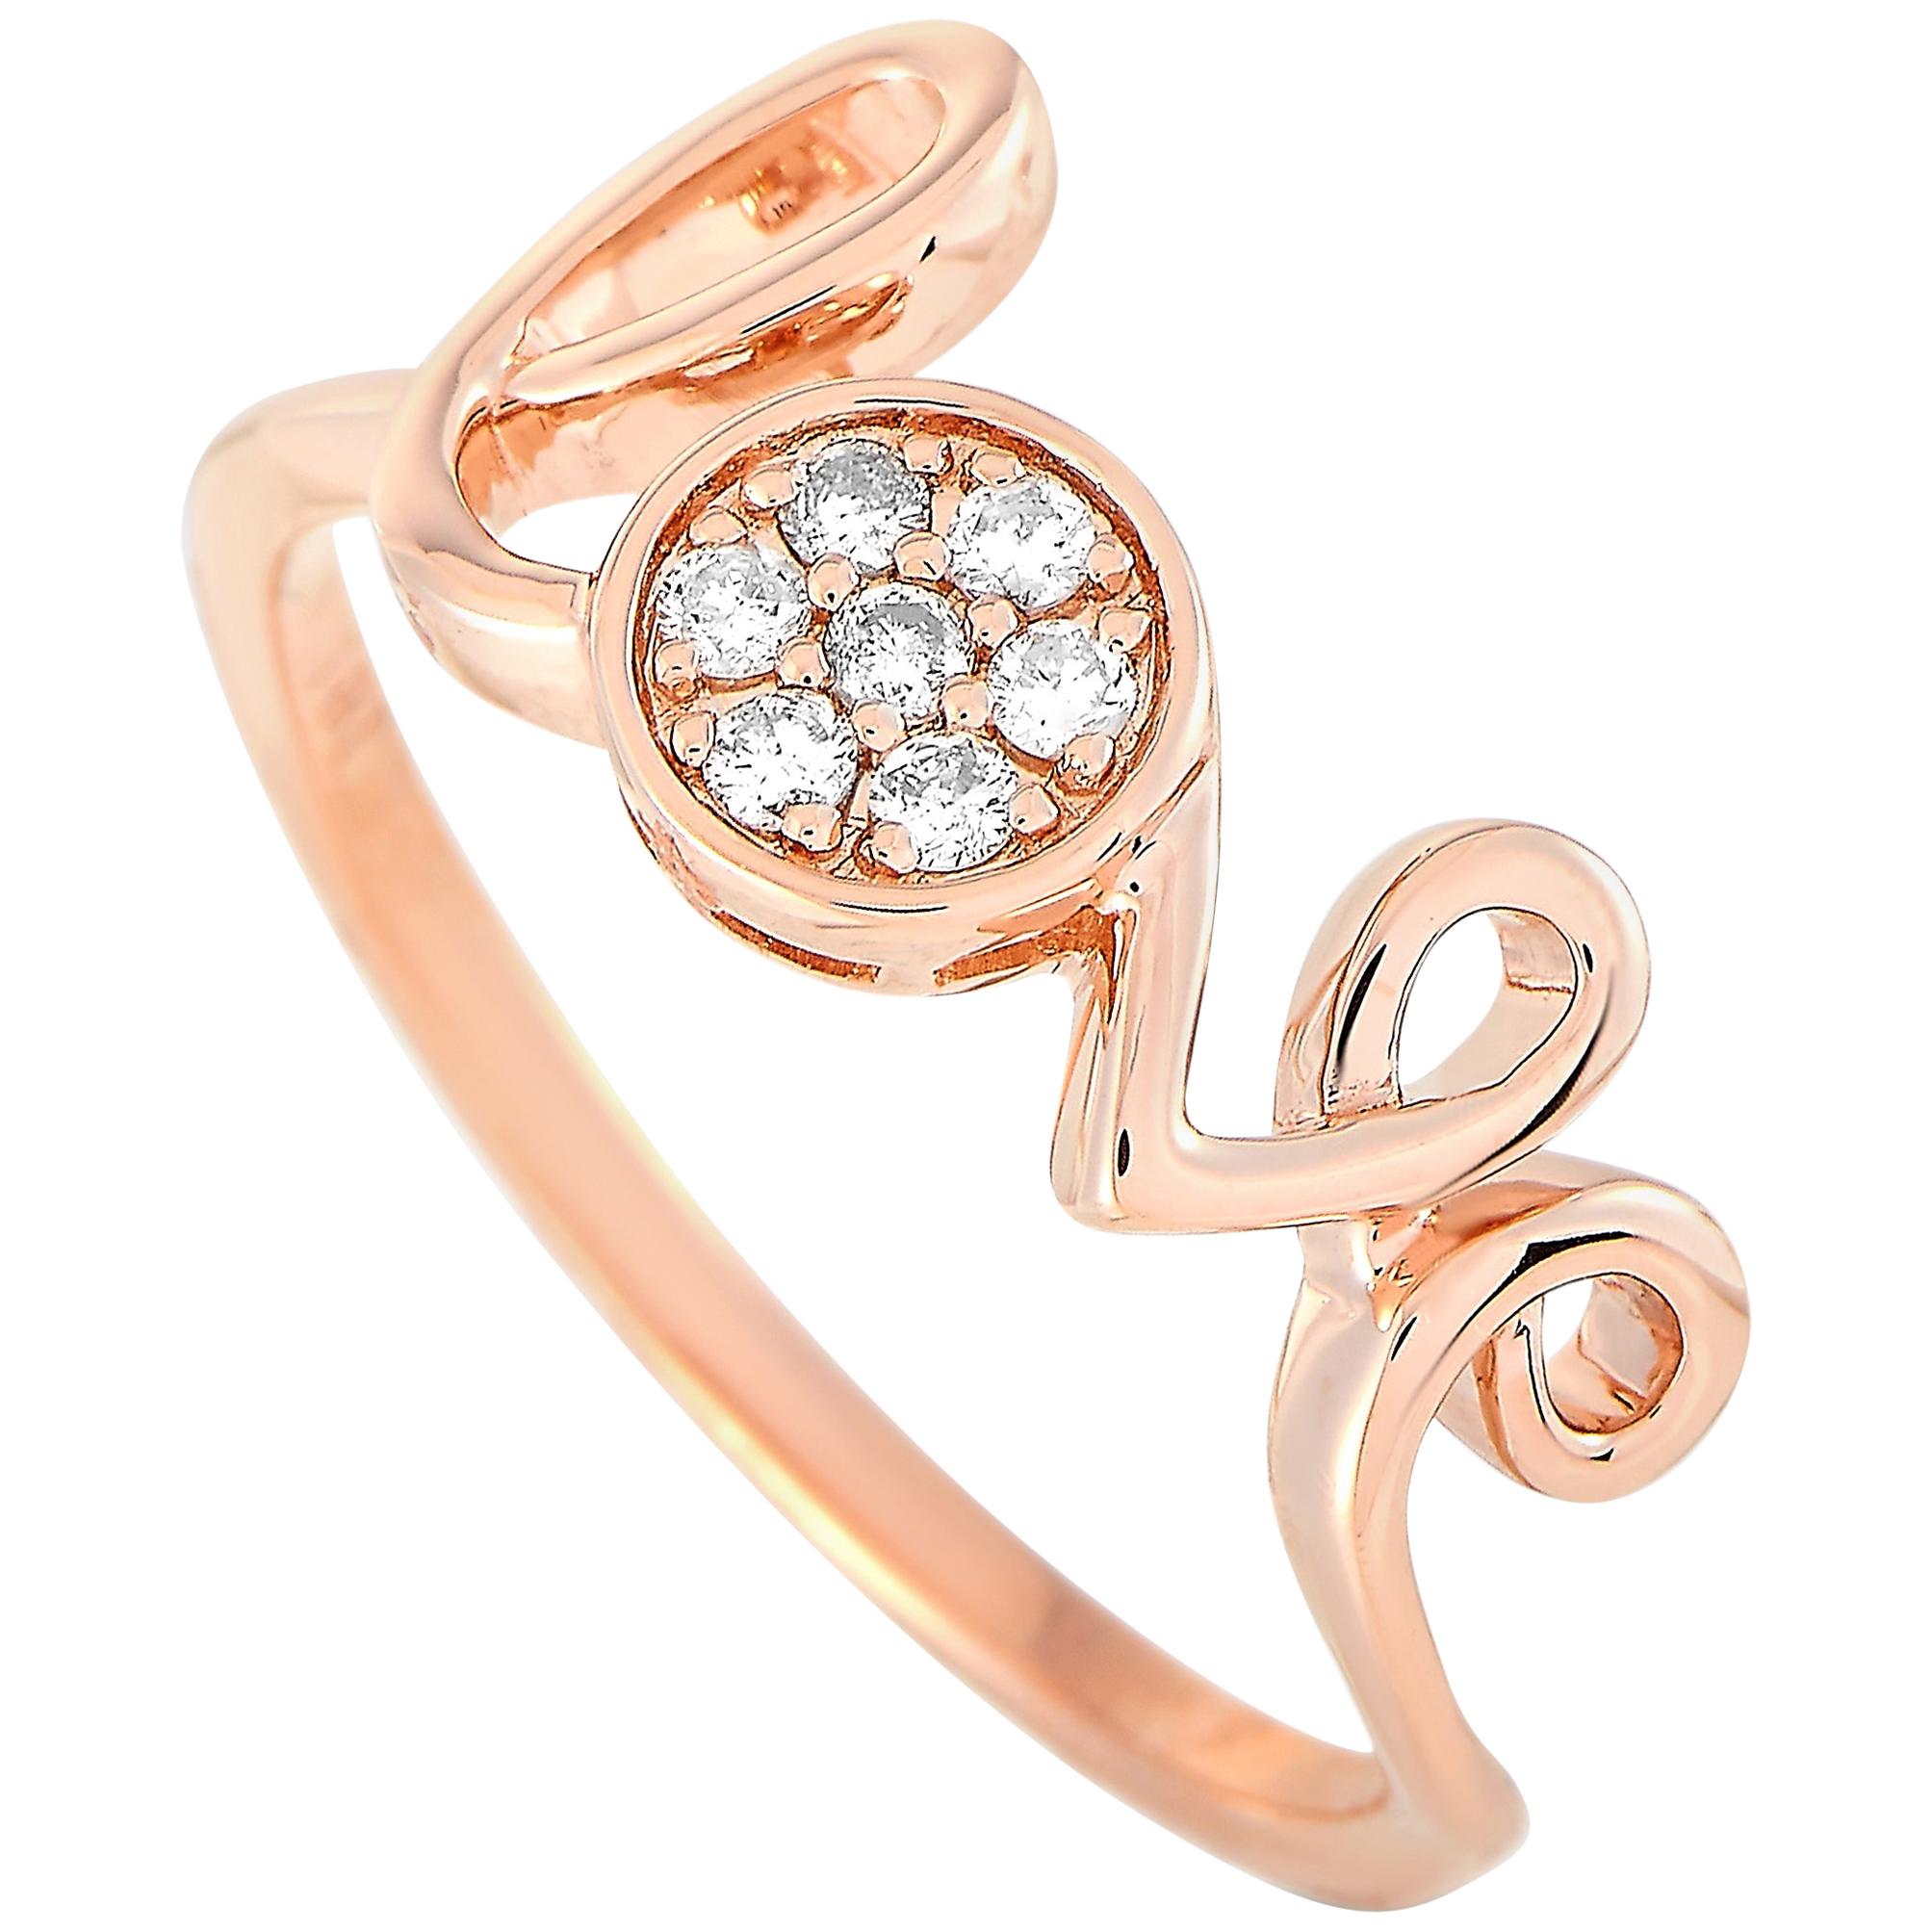 LB Exclusive 14 Karat Rose Gold 0.10 Carat Diamond Ring